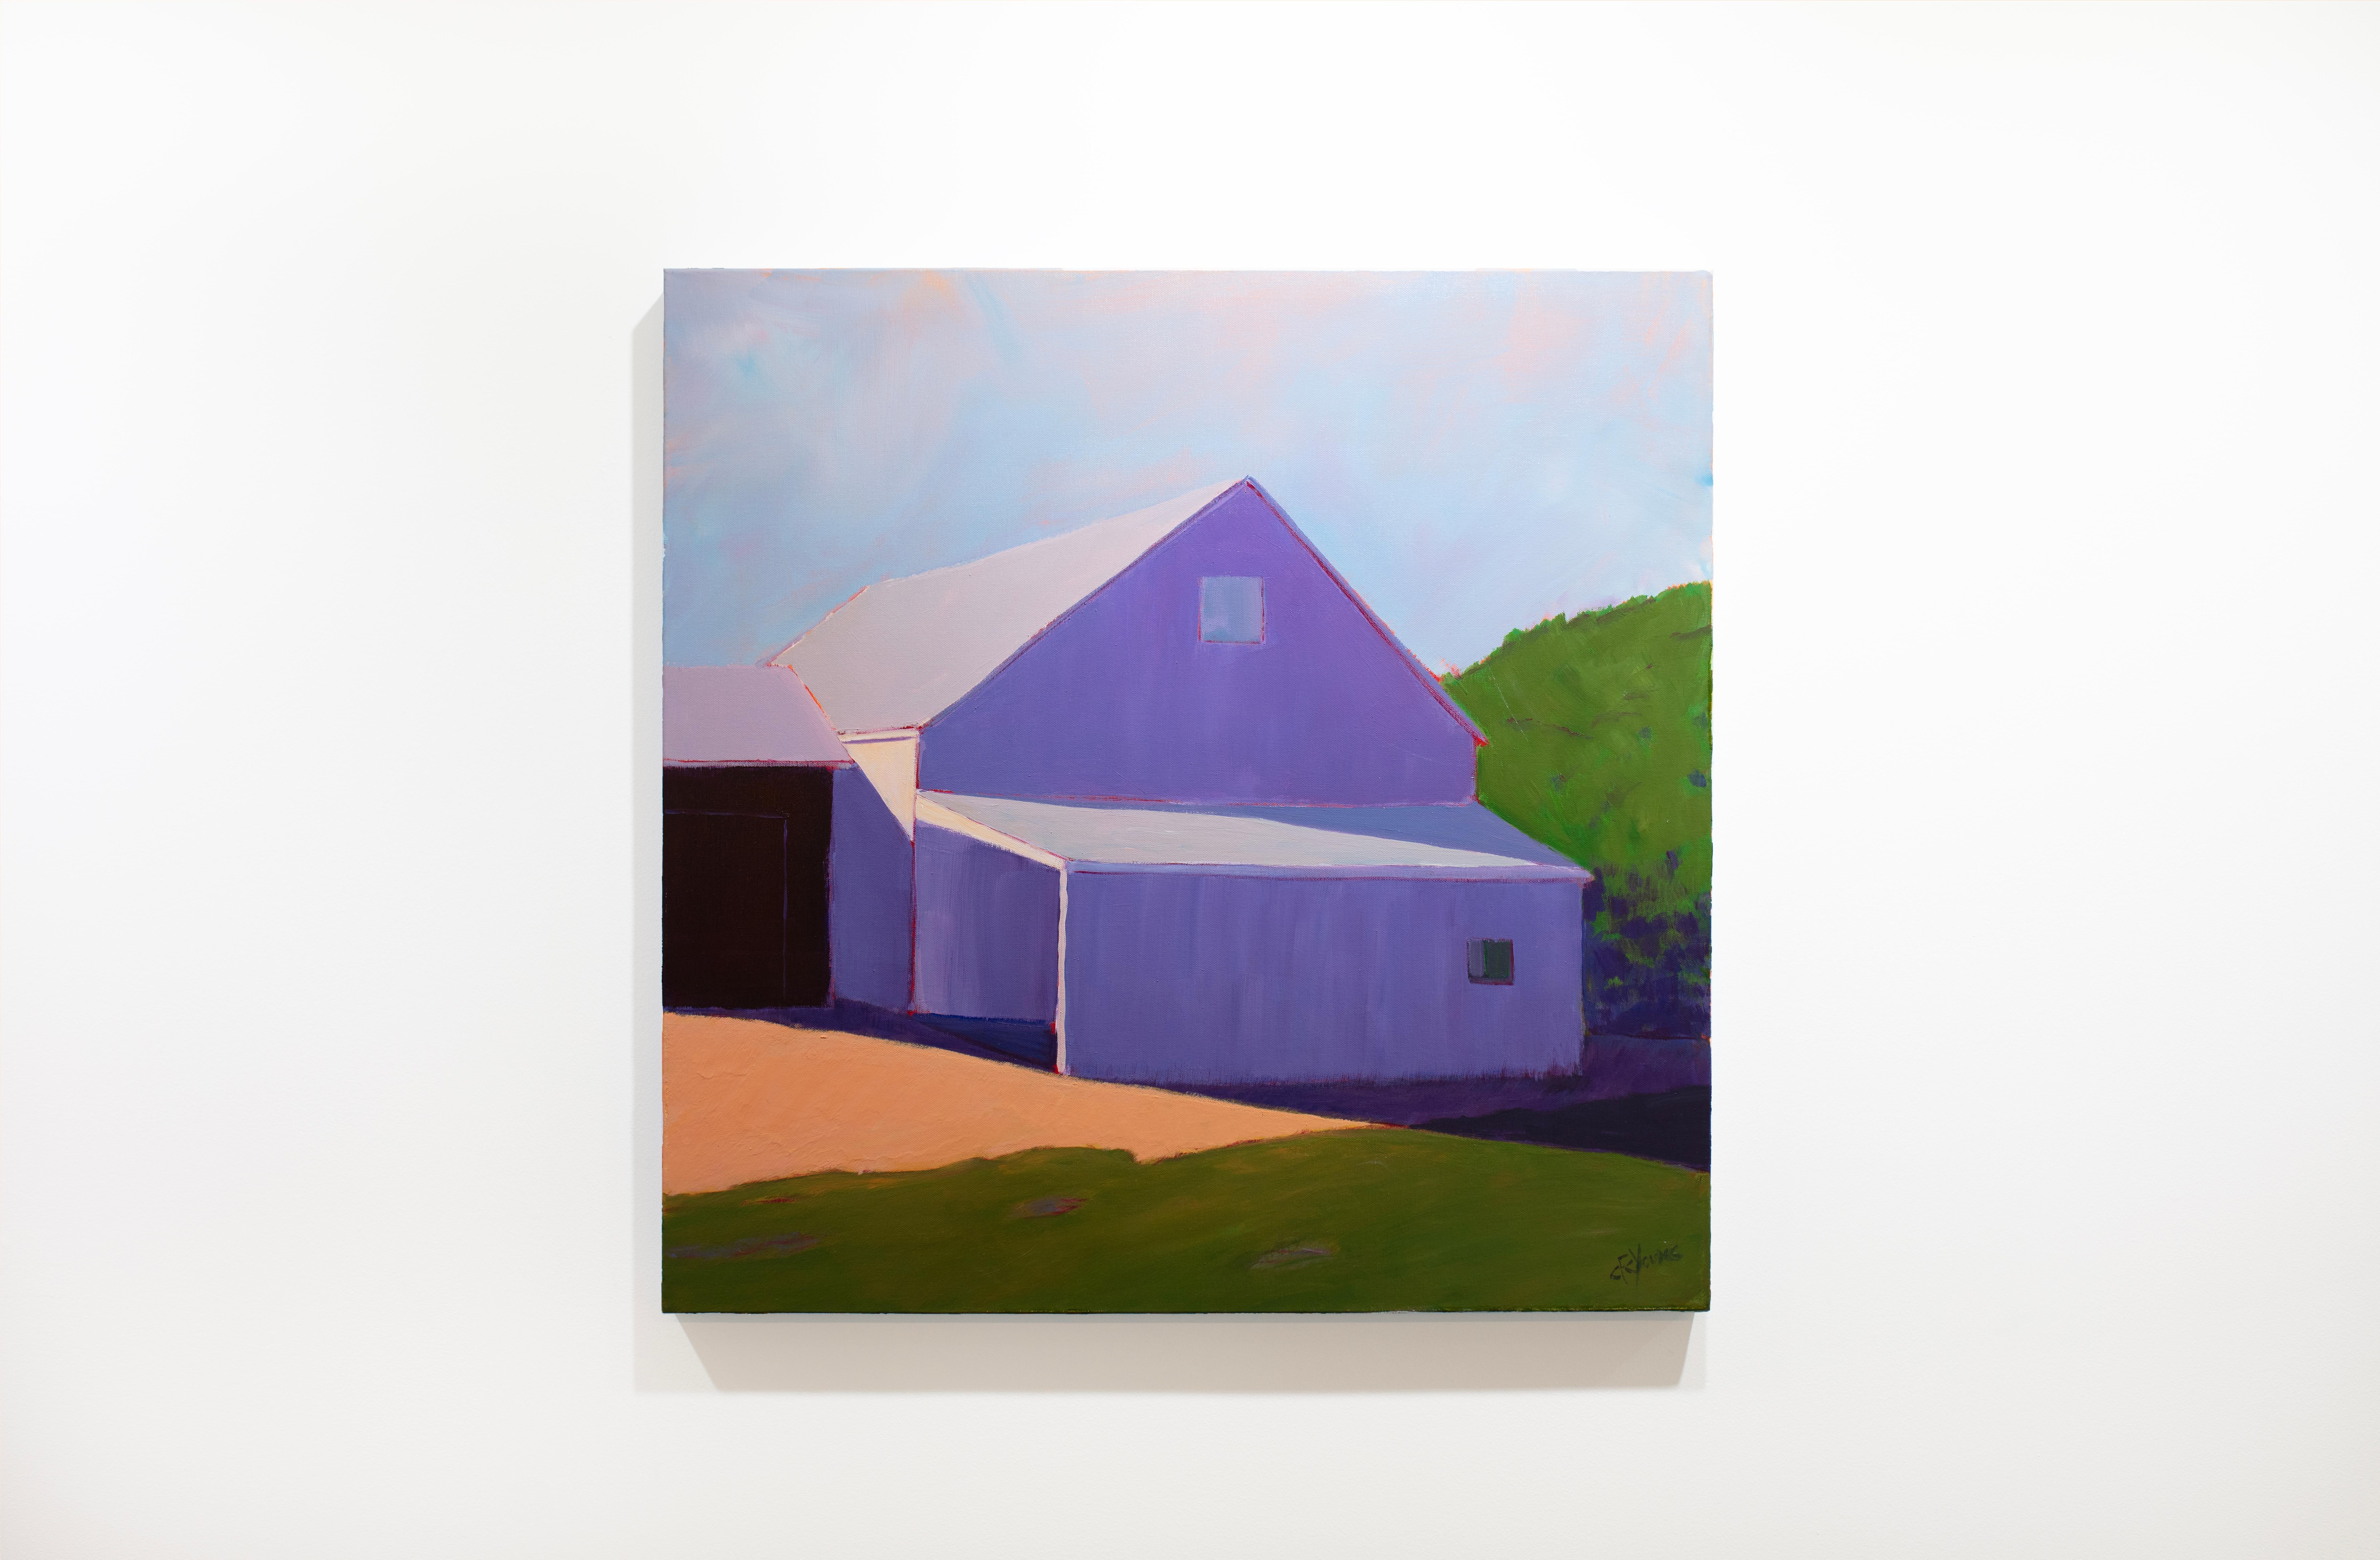 Dieses zeitgenössische realistische Landschaftsgemälde von Carol Young zeigt eine Scheune in einer ländlichen Umgebung. Es zeichnet sich durch eine lebendige, kontrastreiche Farbpalette mit einer violetten architektonischen Struktur, grünem Laub und